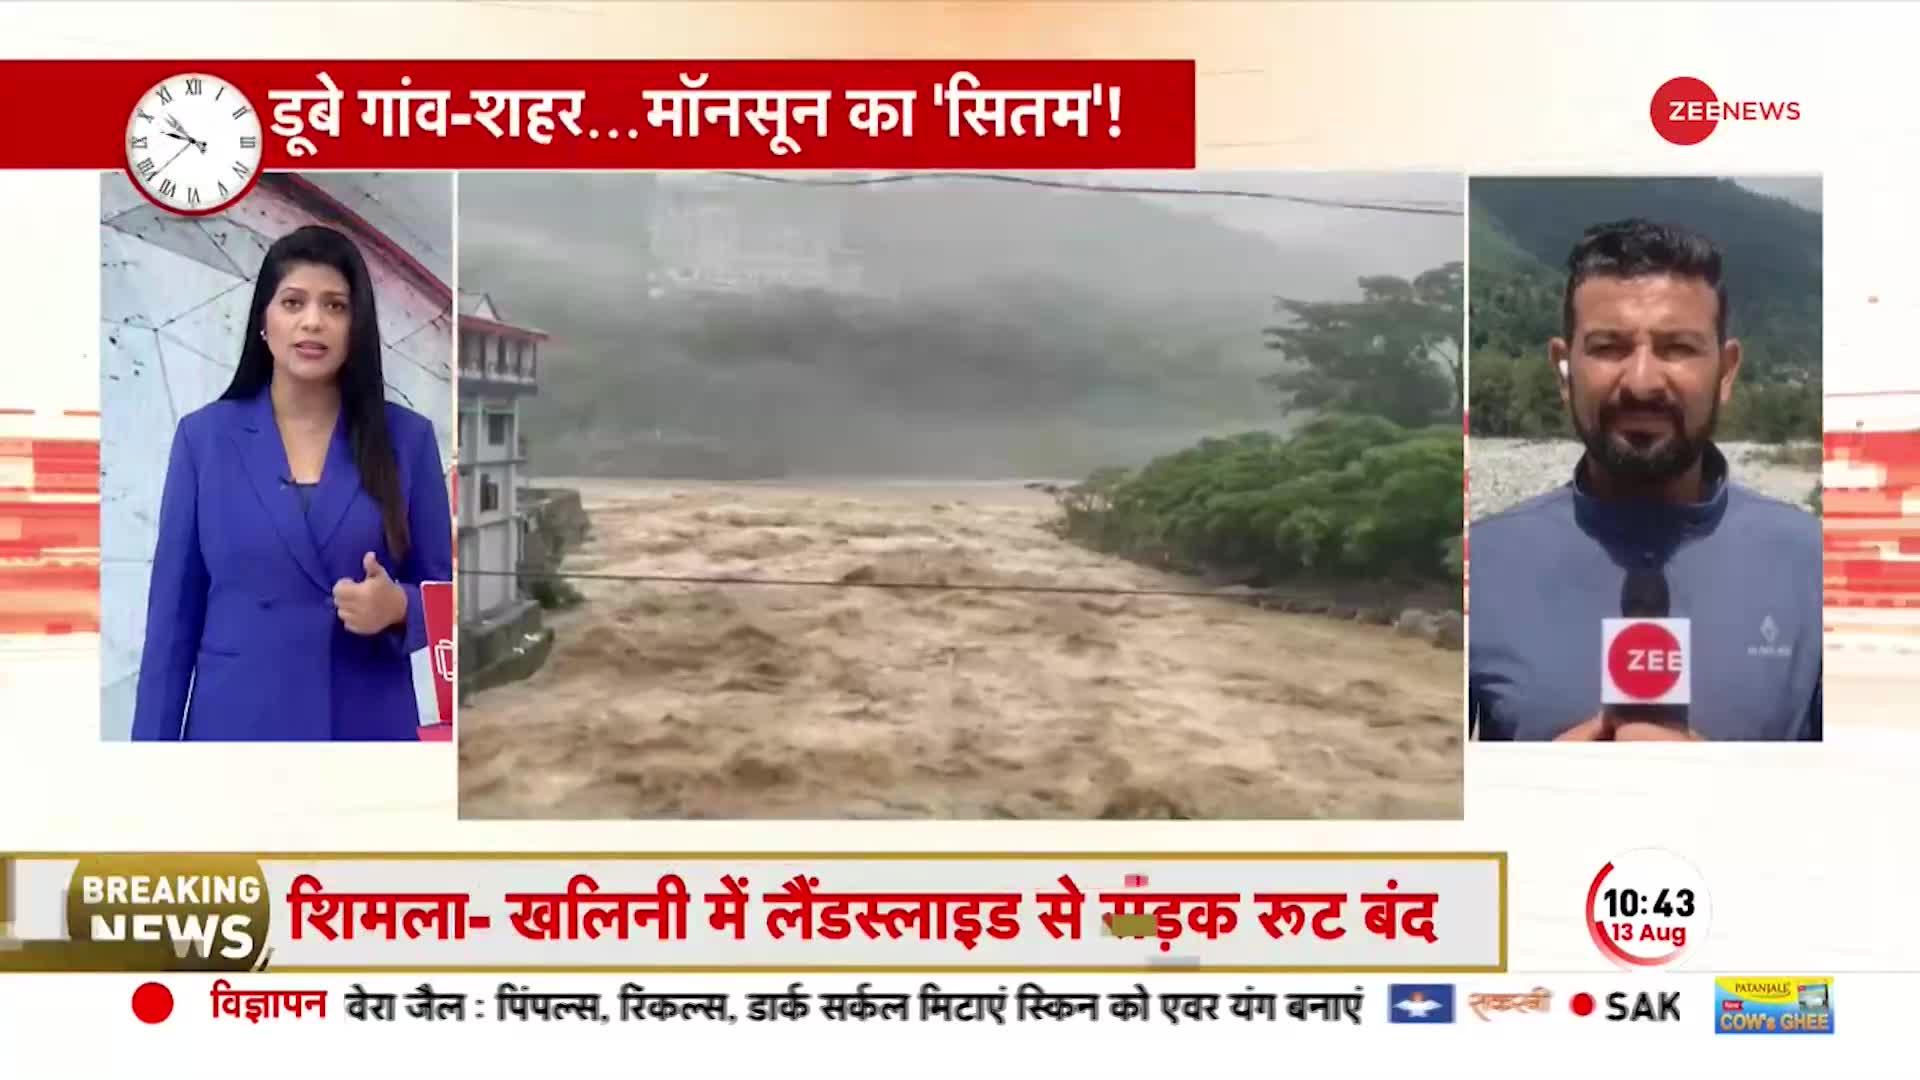 RAIN ALERT: Hiamchal में बाढ़-बारिश से मुसीबत भारी, बारिश का Red Alert जारी